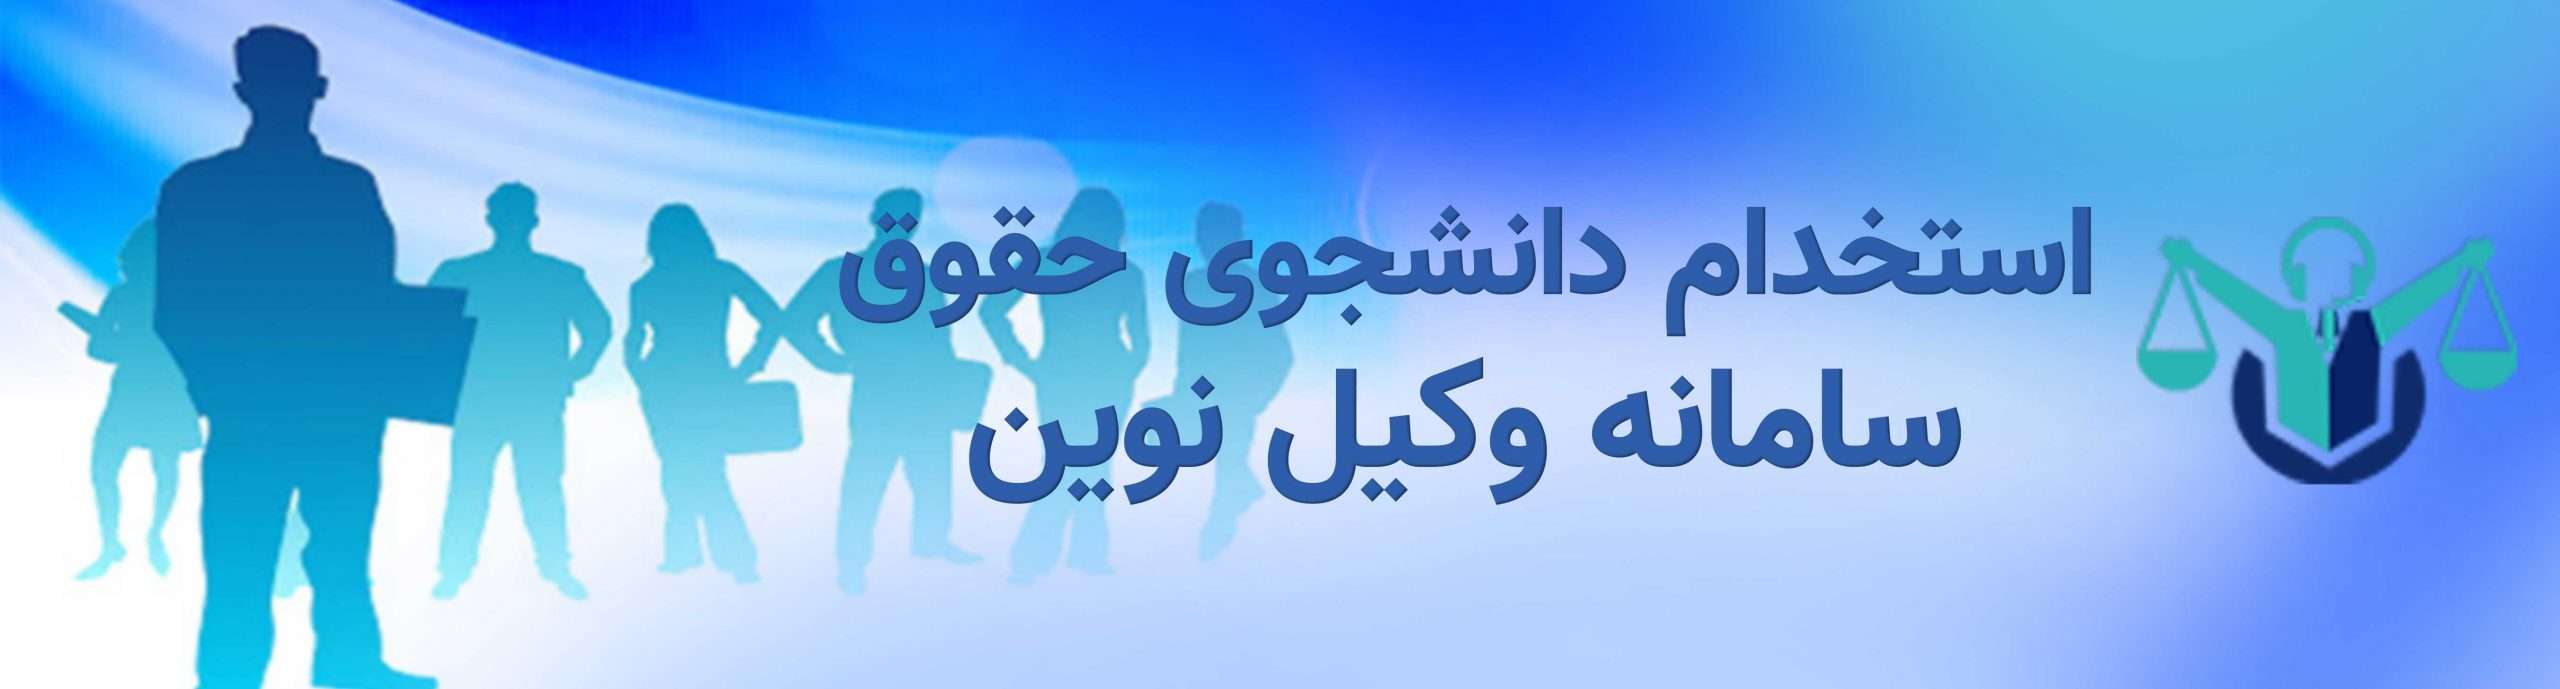 01استخدام دانشجوی حقوق scaled استخدام دانشجو حقوق یا فارغ التحصیل حقوق در اصفهان